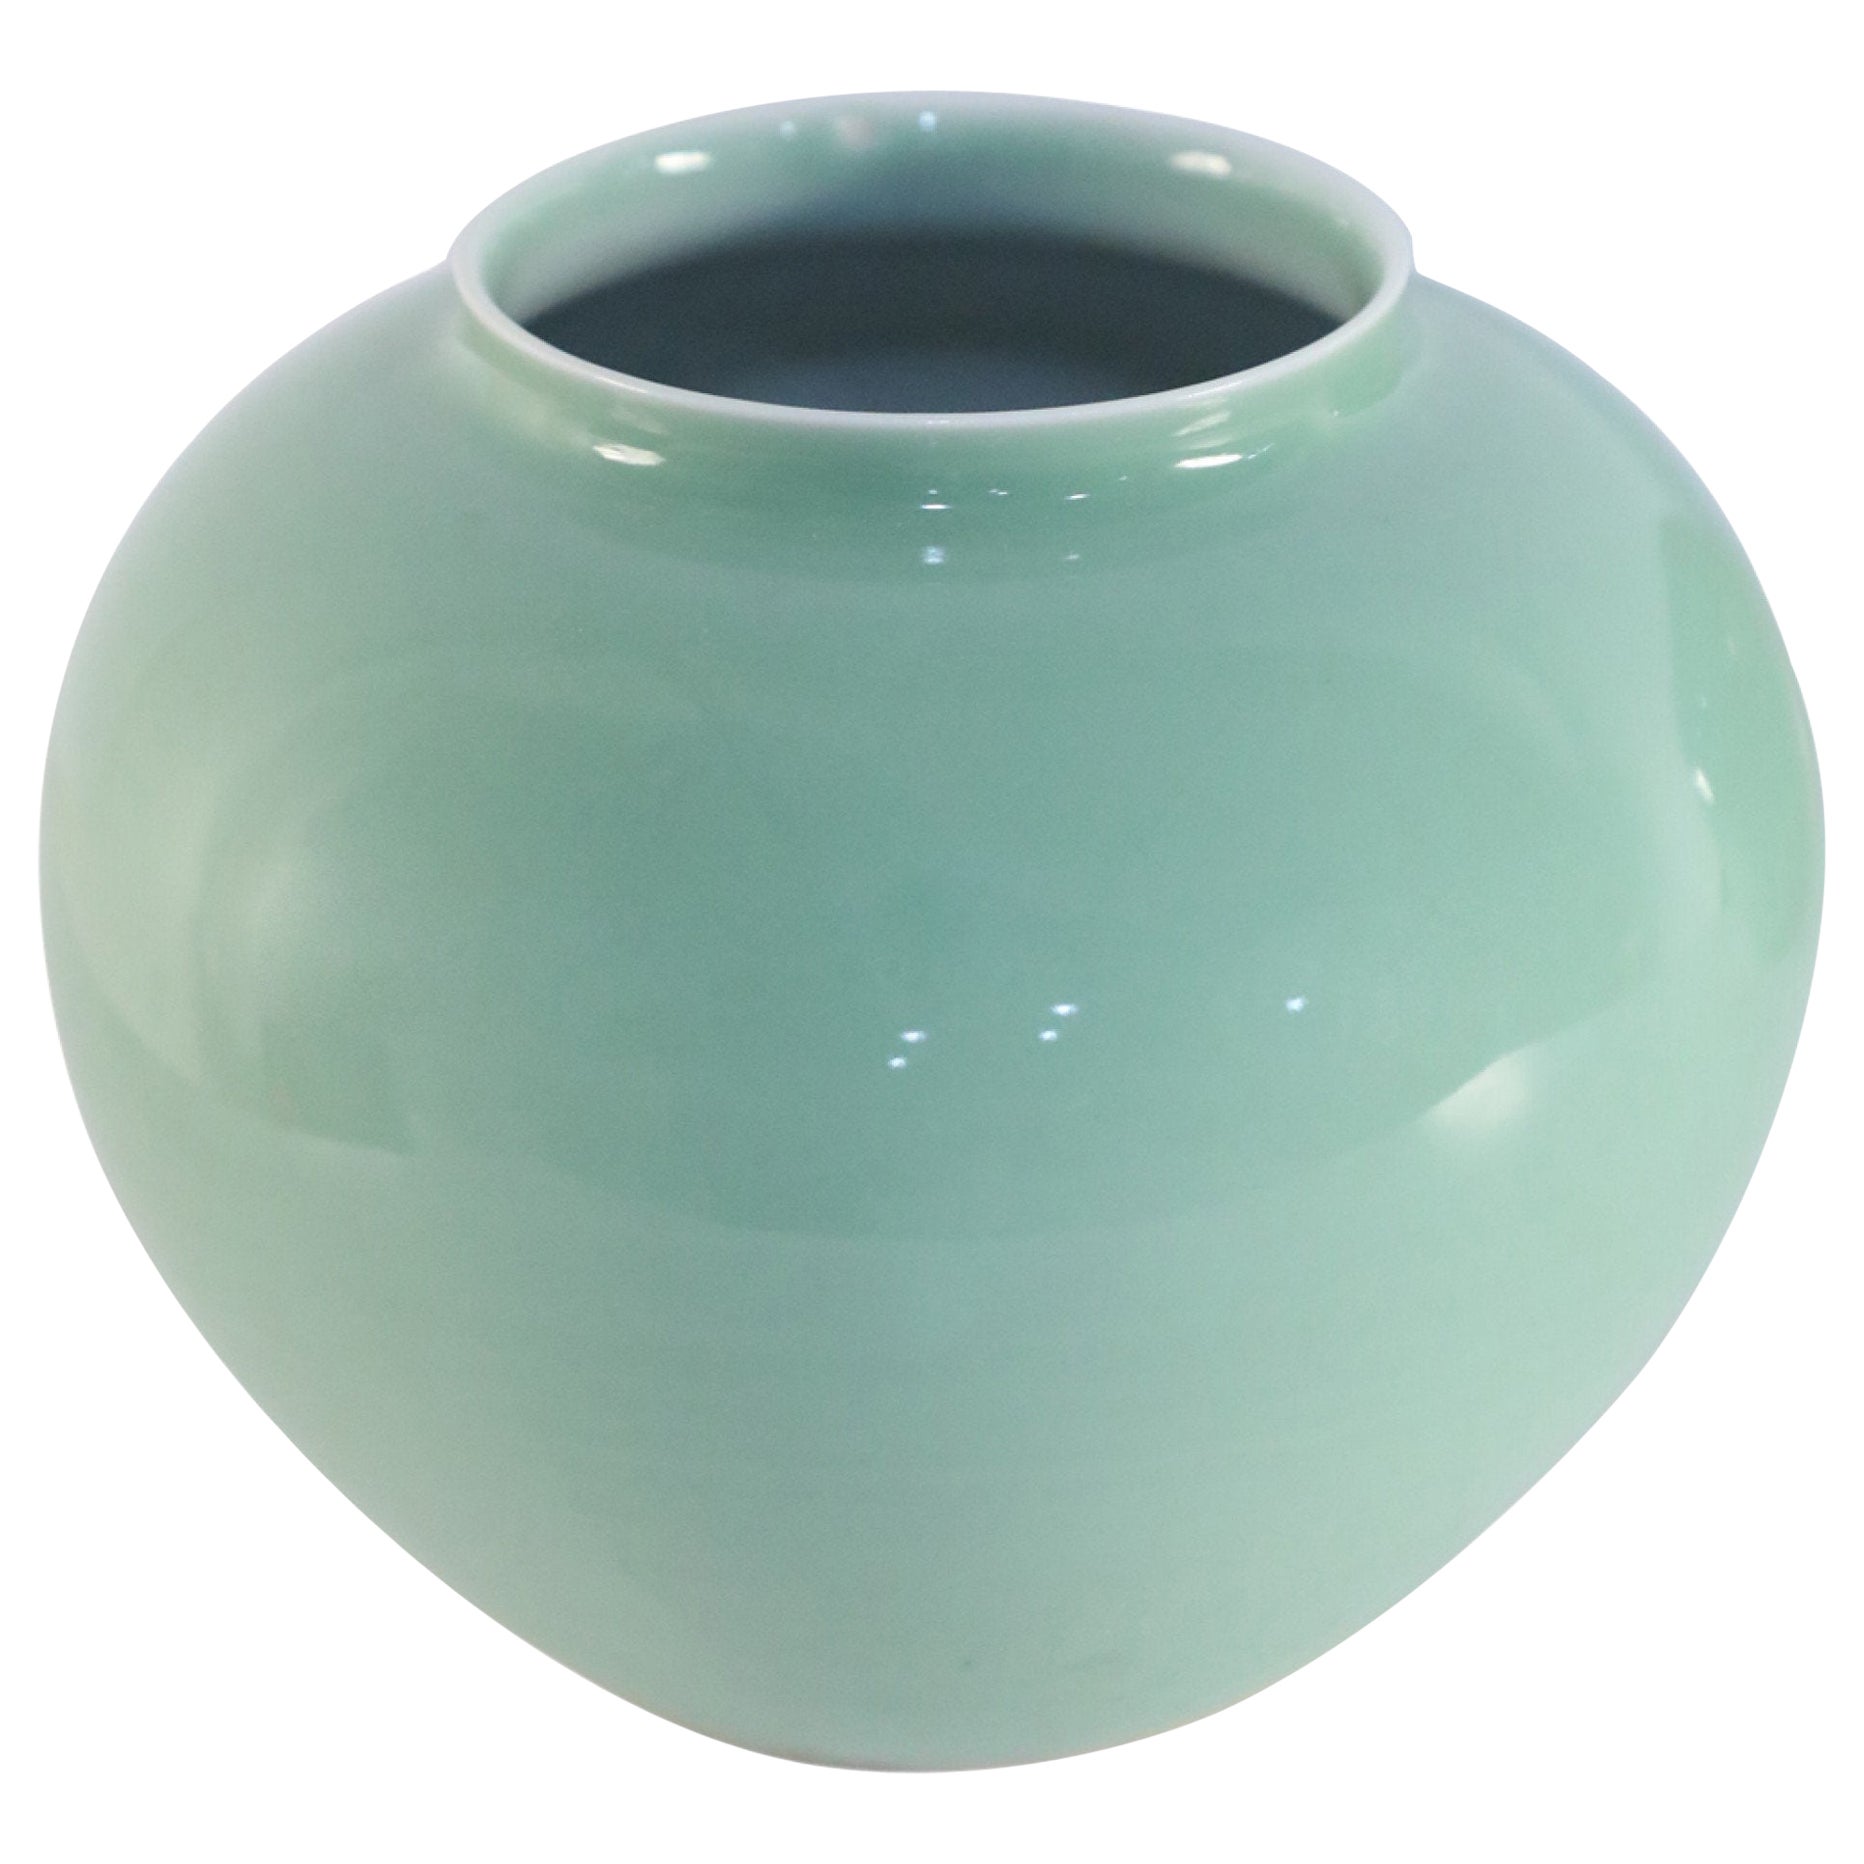 Chinese Celadon Glazed Porcelain Vase For Sale